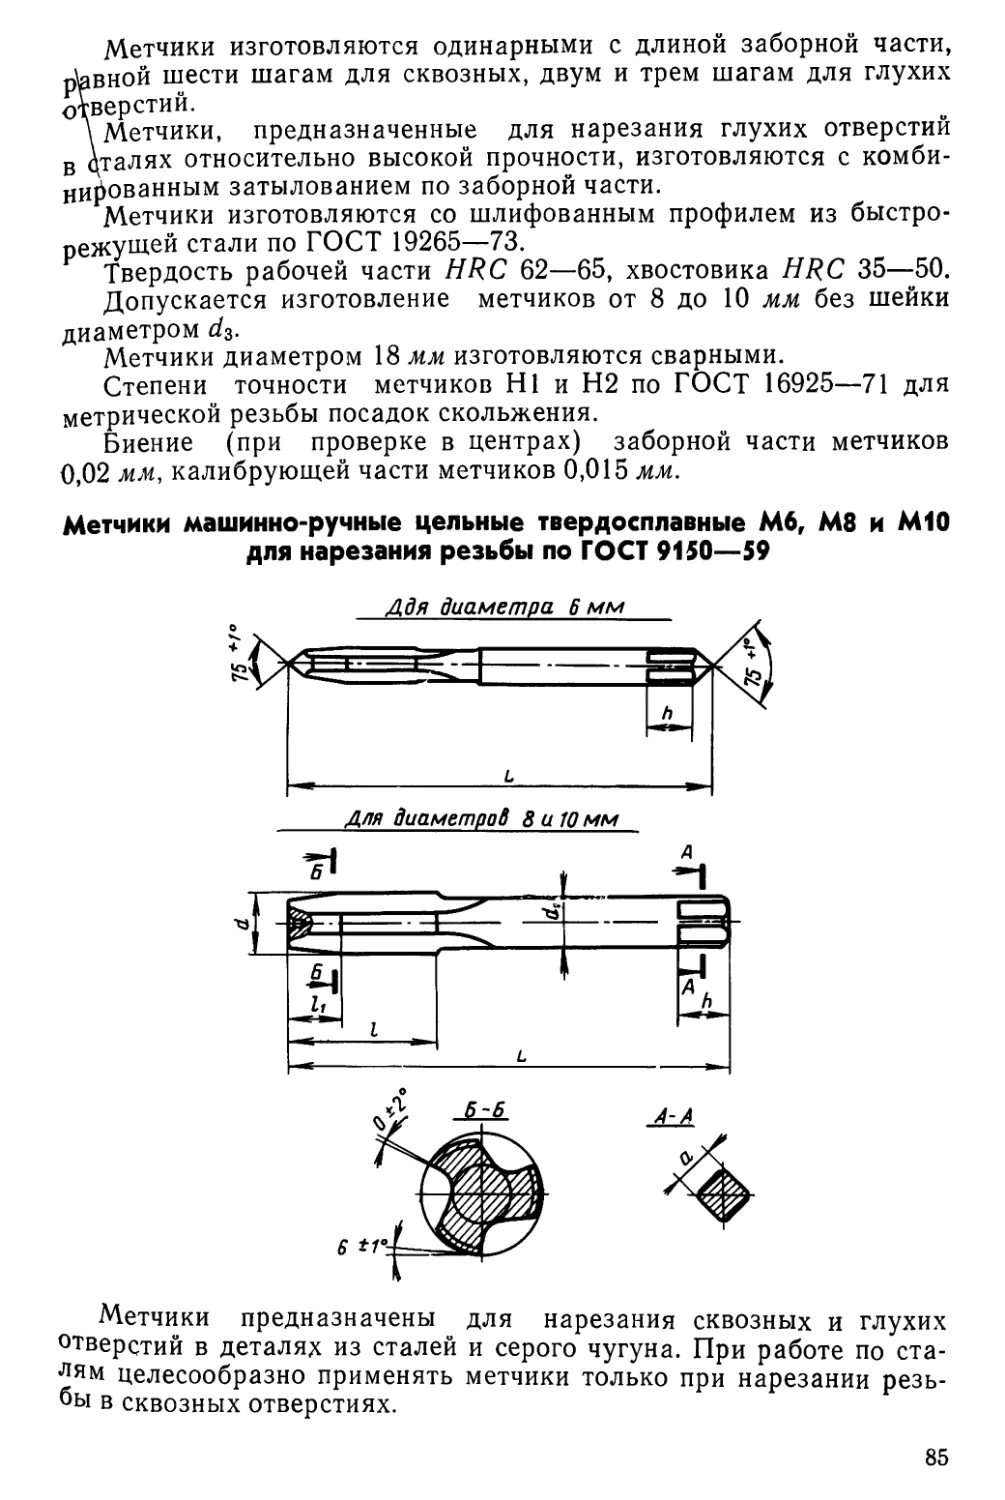 Метчики машинно-ручные цельные твердосплавные М6, М8 и М10 для нарезания резьбы по ГОСТ 9150—59